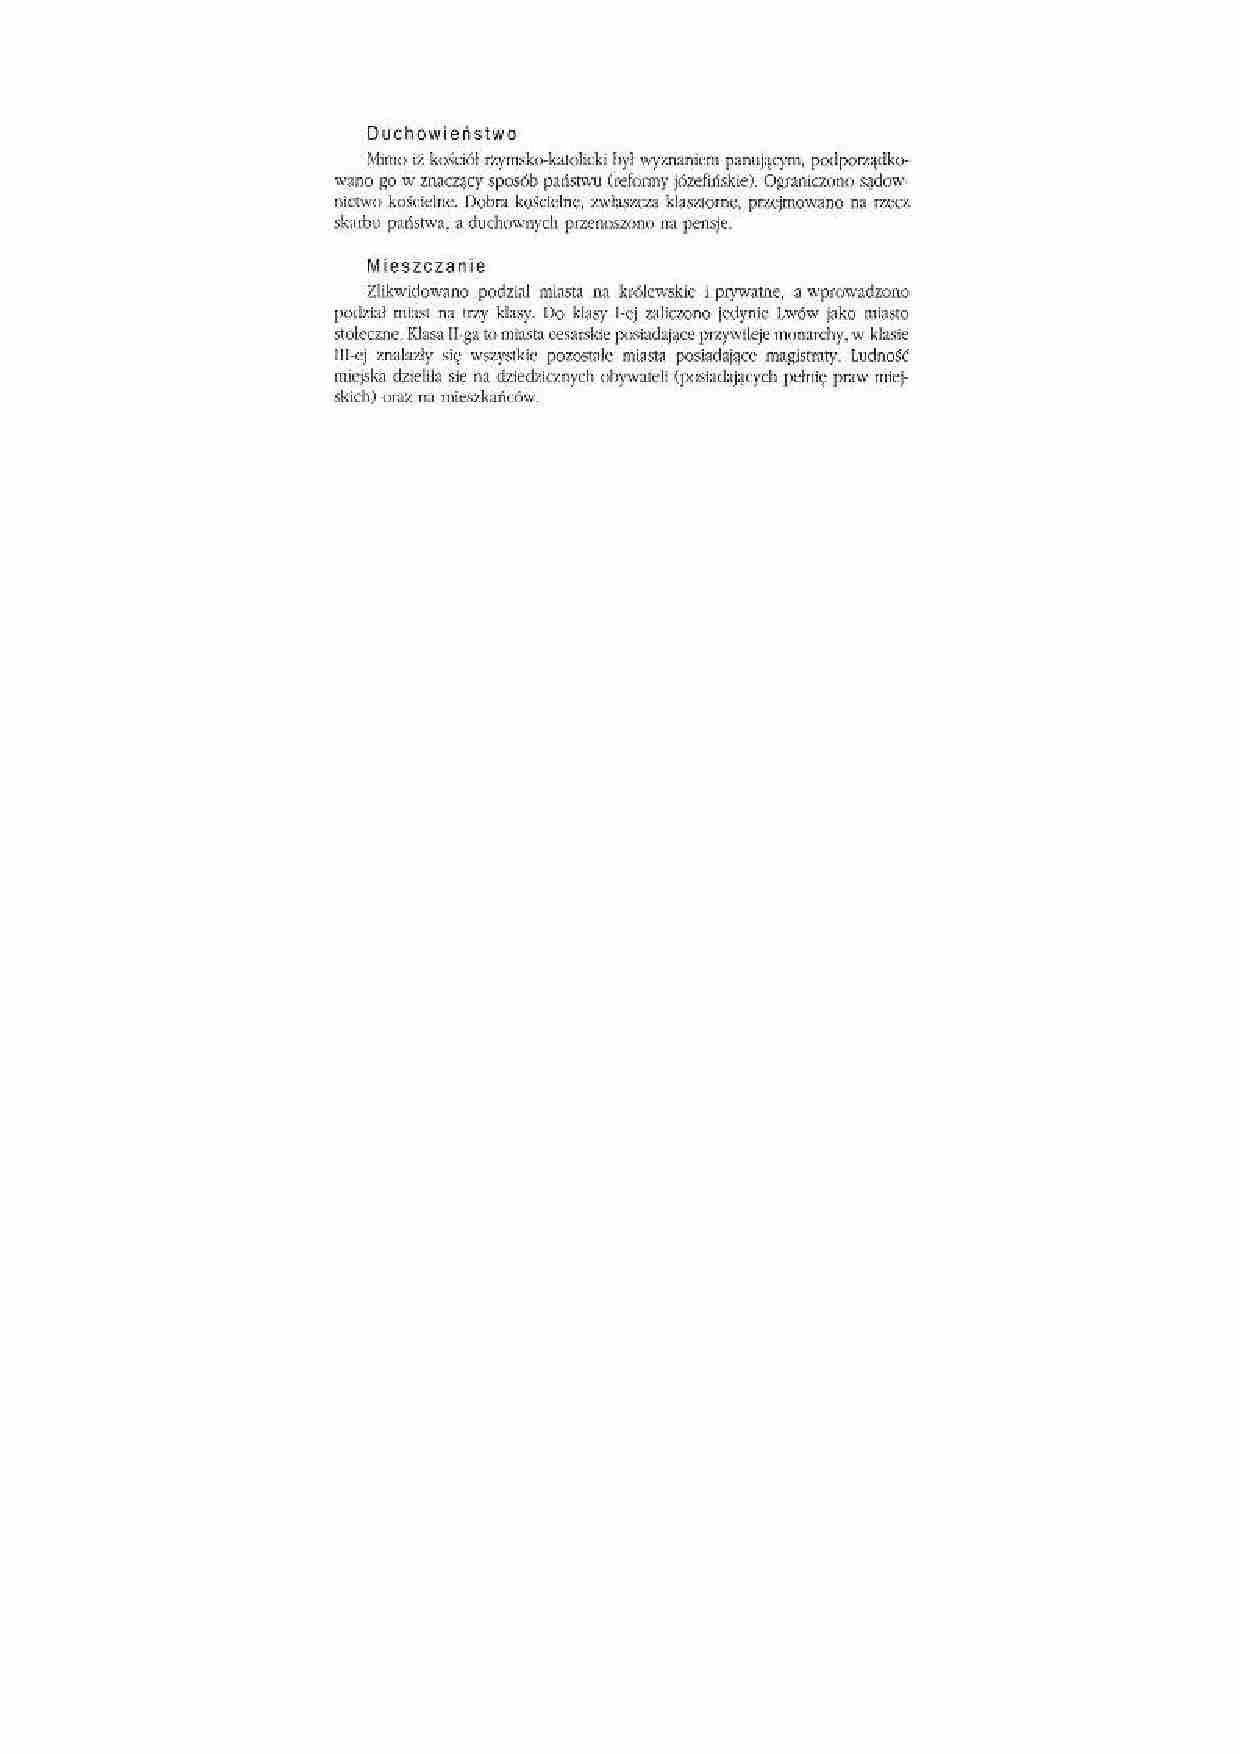 Zabór austriack i- duchowieństwo, mieszczanie - strona 1